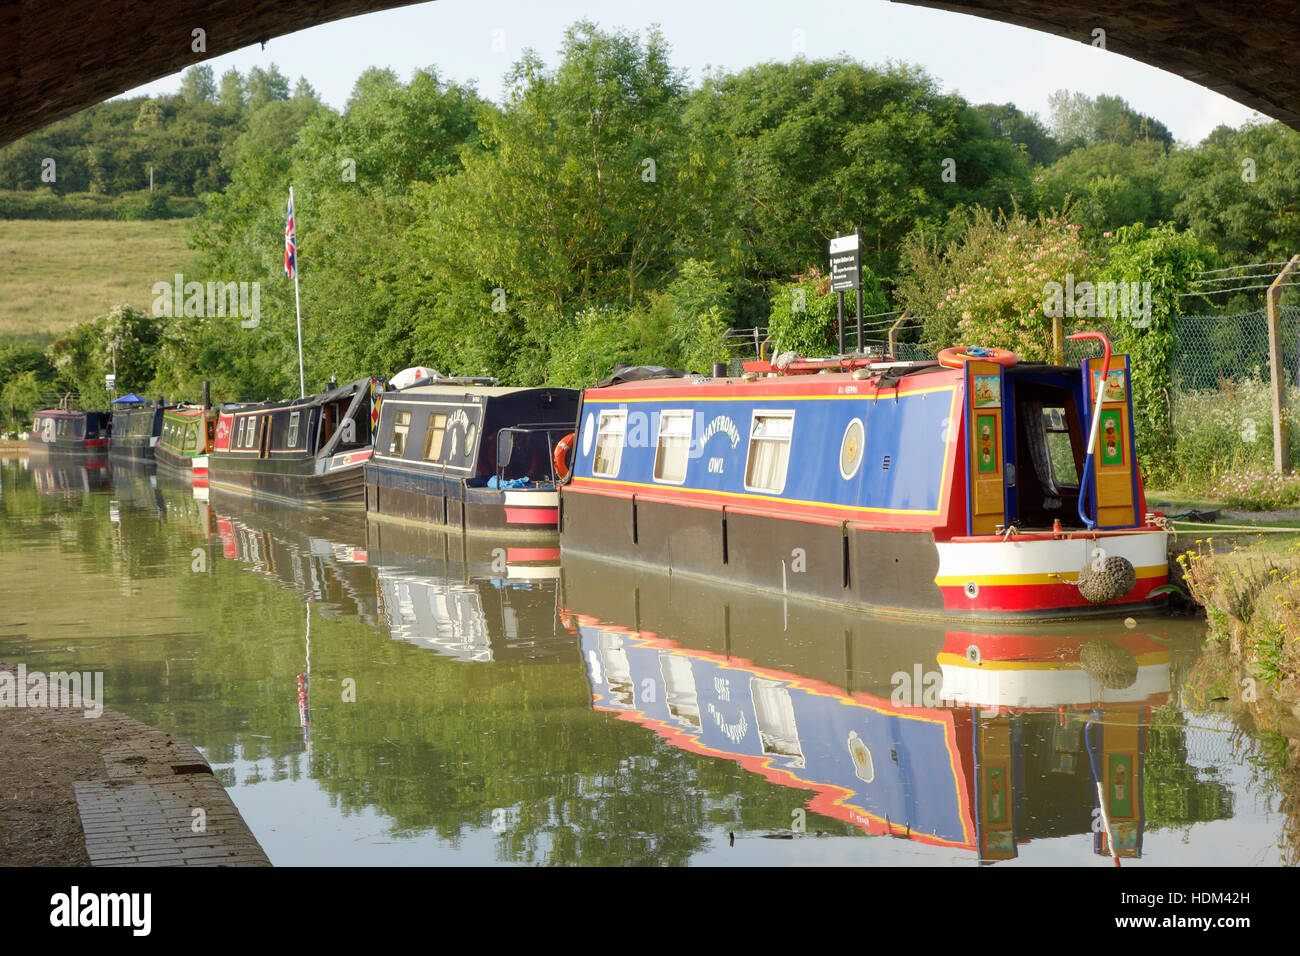 Bateaux amarrés à Napton étroit Verrouillage du fond 8, Oxford Canal, Warwickshire, England, UK Banque D'Images